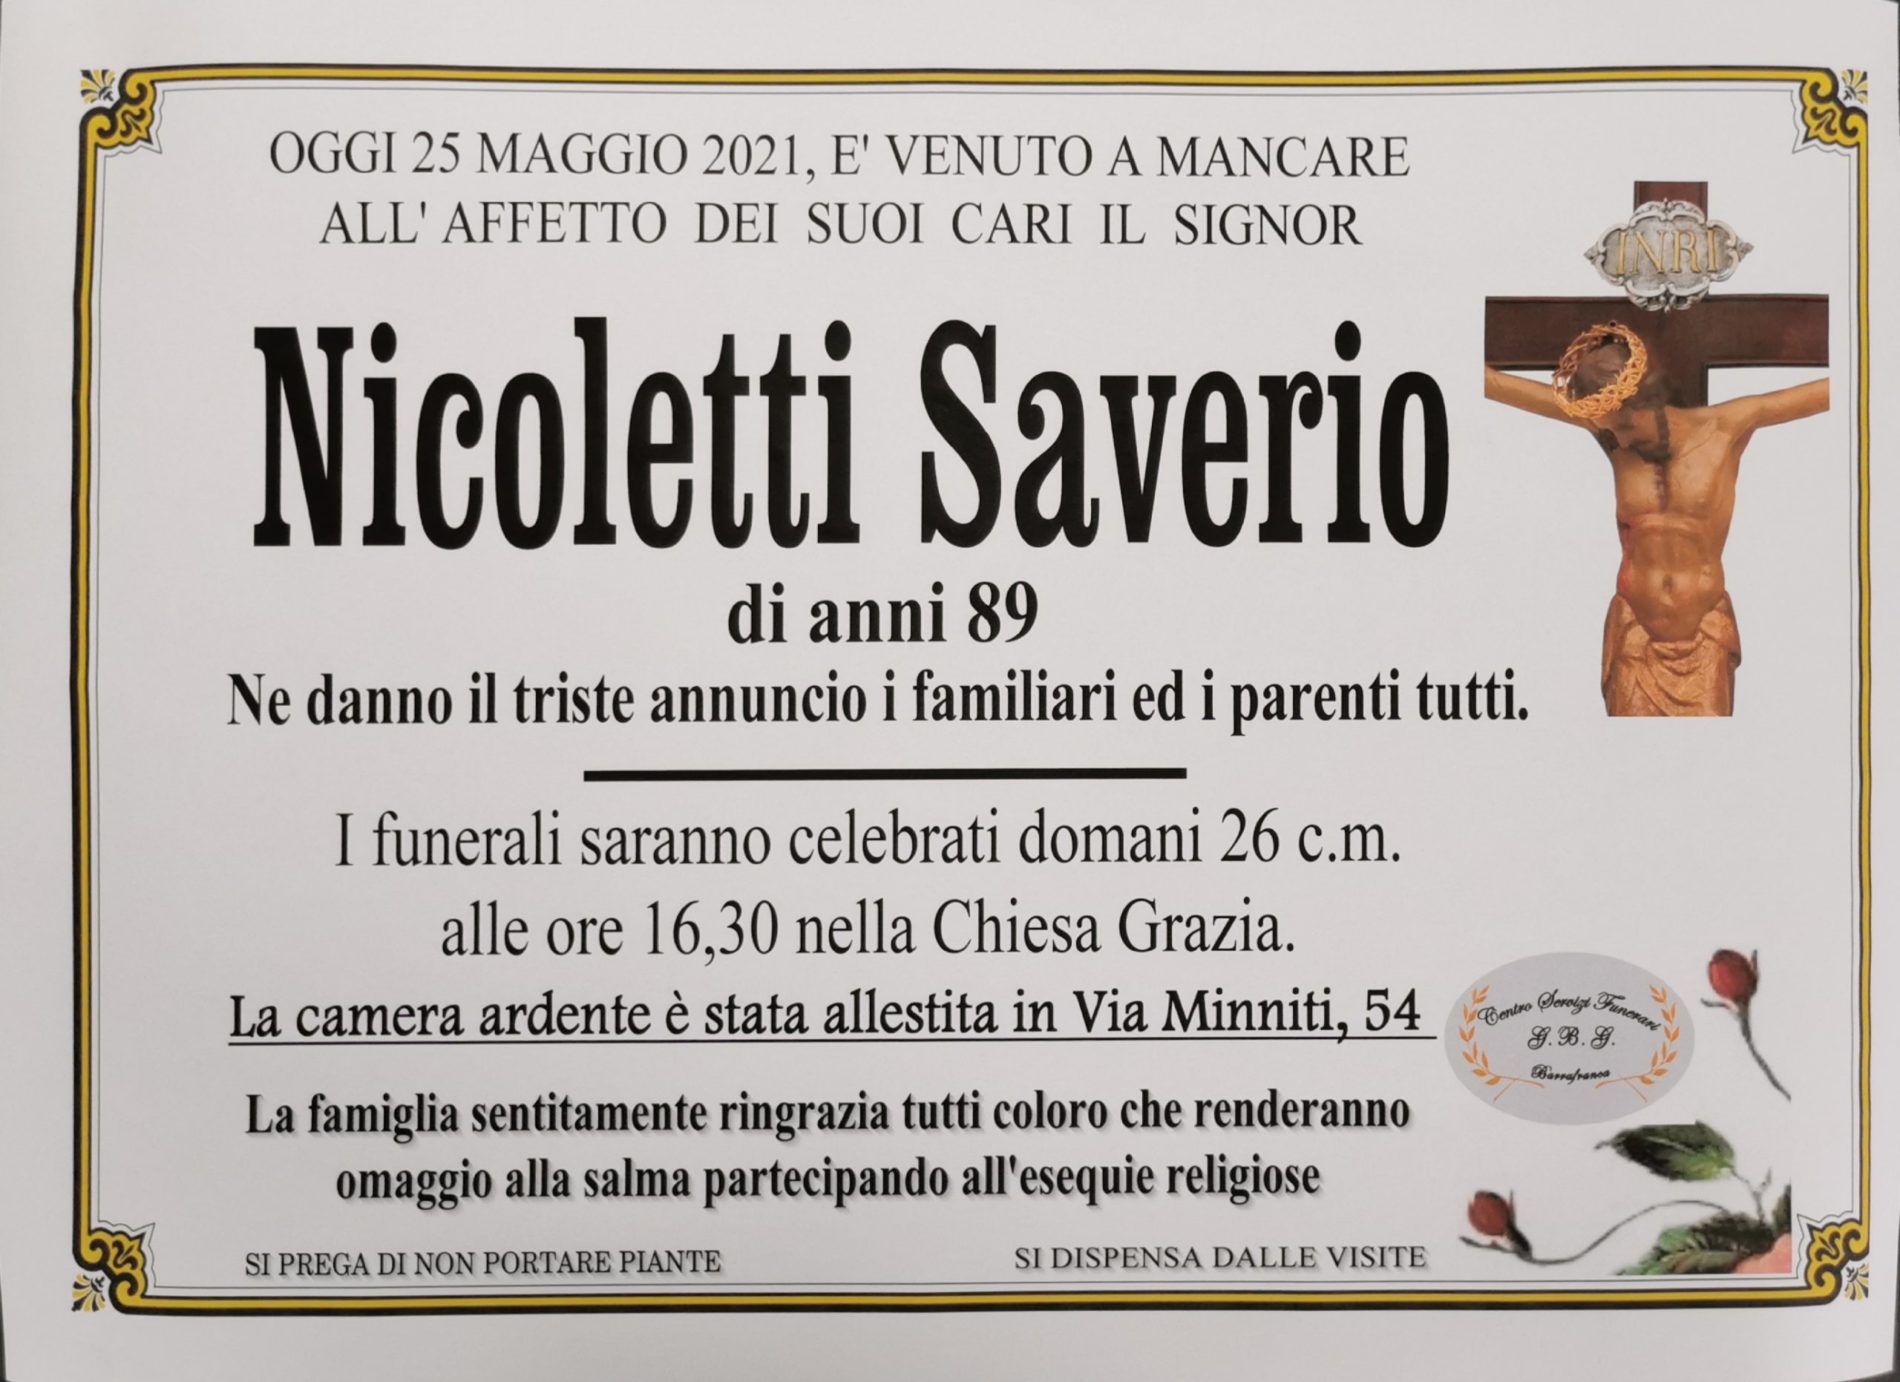 Annuncio servizi funerari agenzia G.B.G. sig. Nicoletti Saverio di anni 89